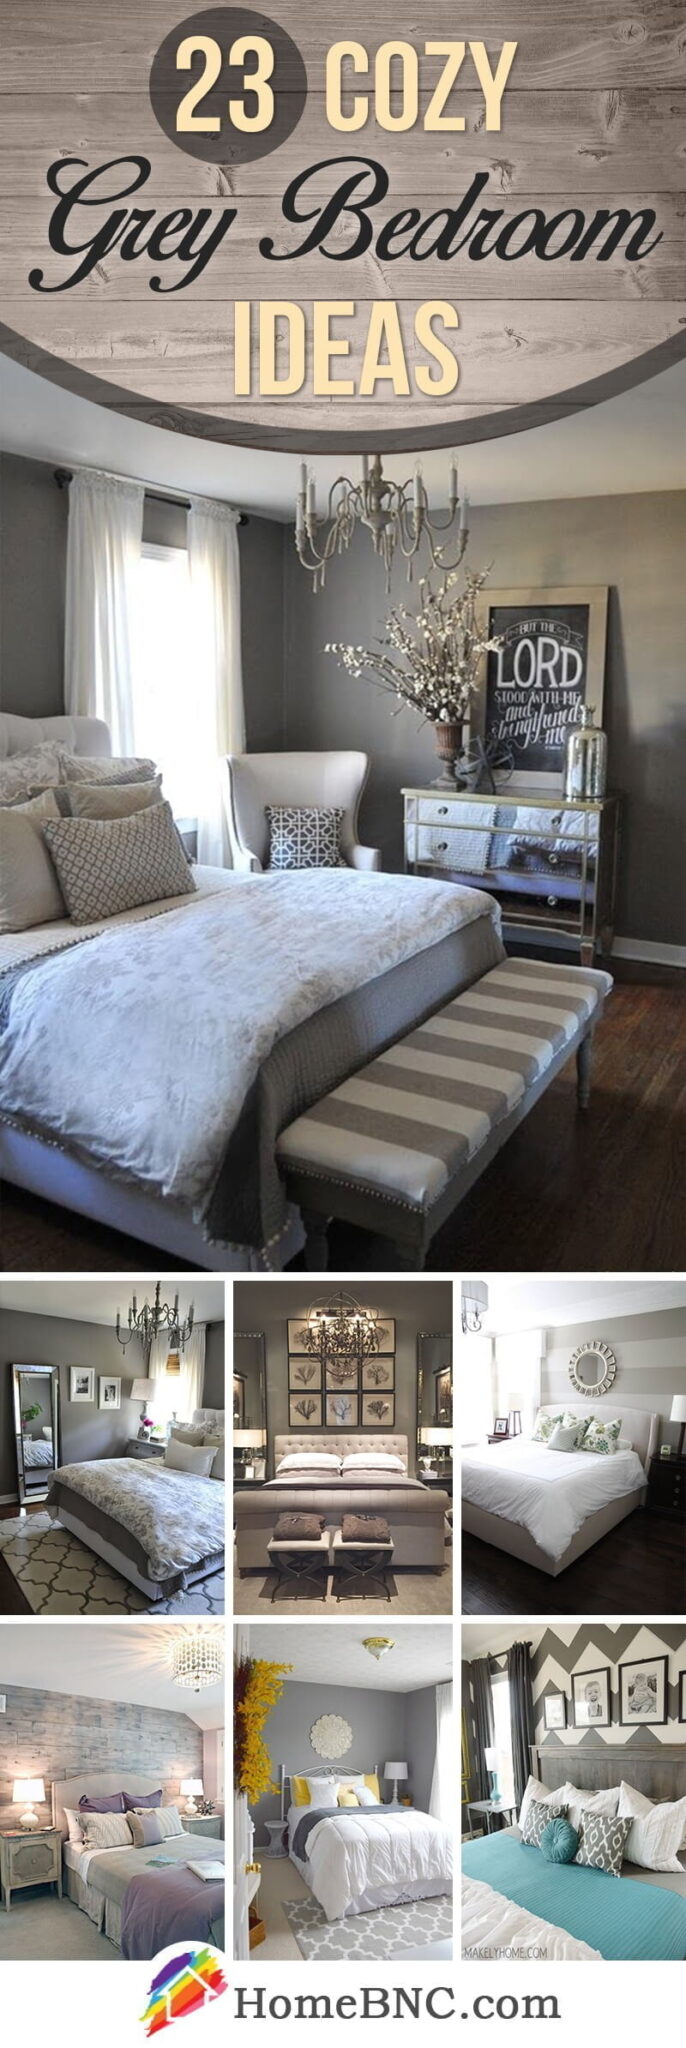 Grey Bedroom Ideas Pinterest Share Homebnc V2 686x2048 